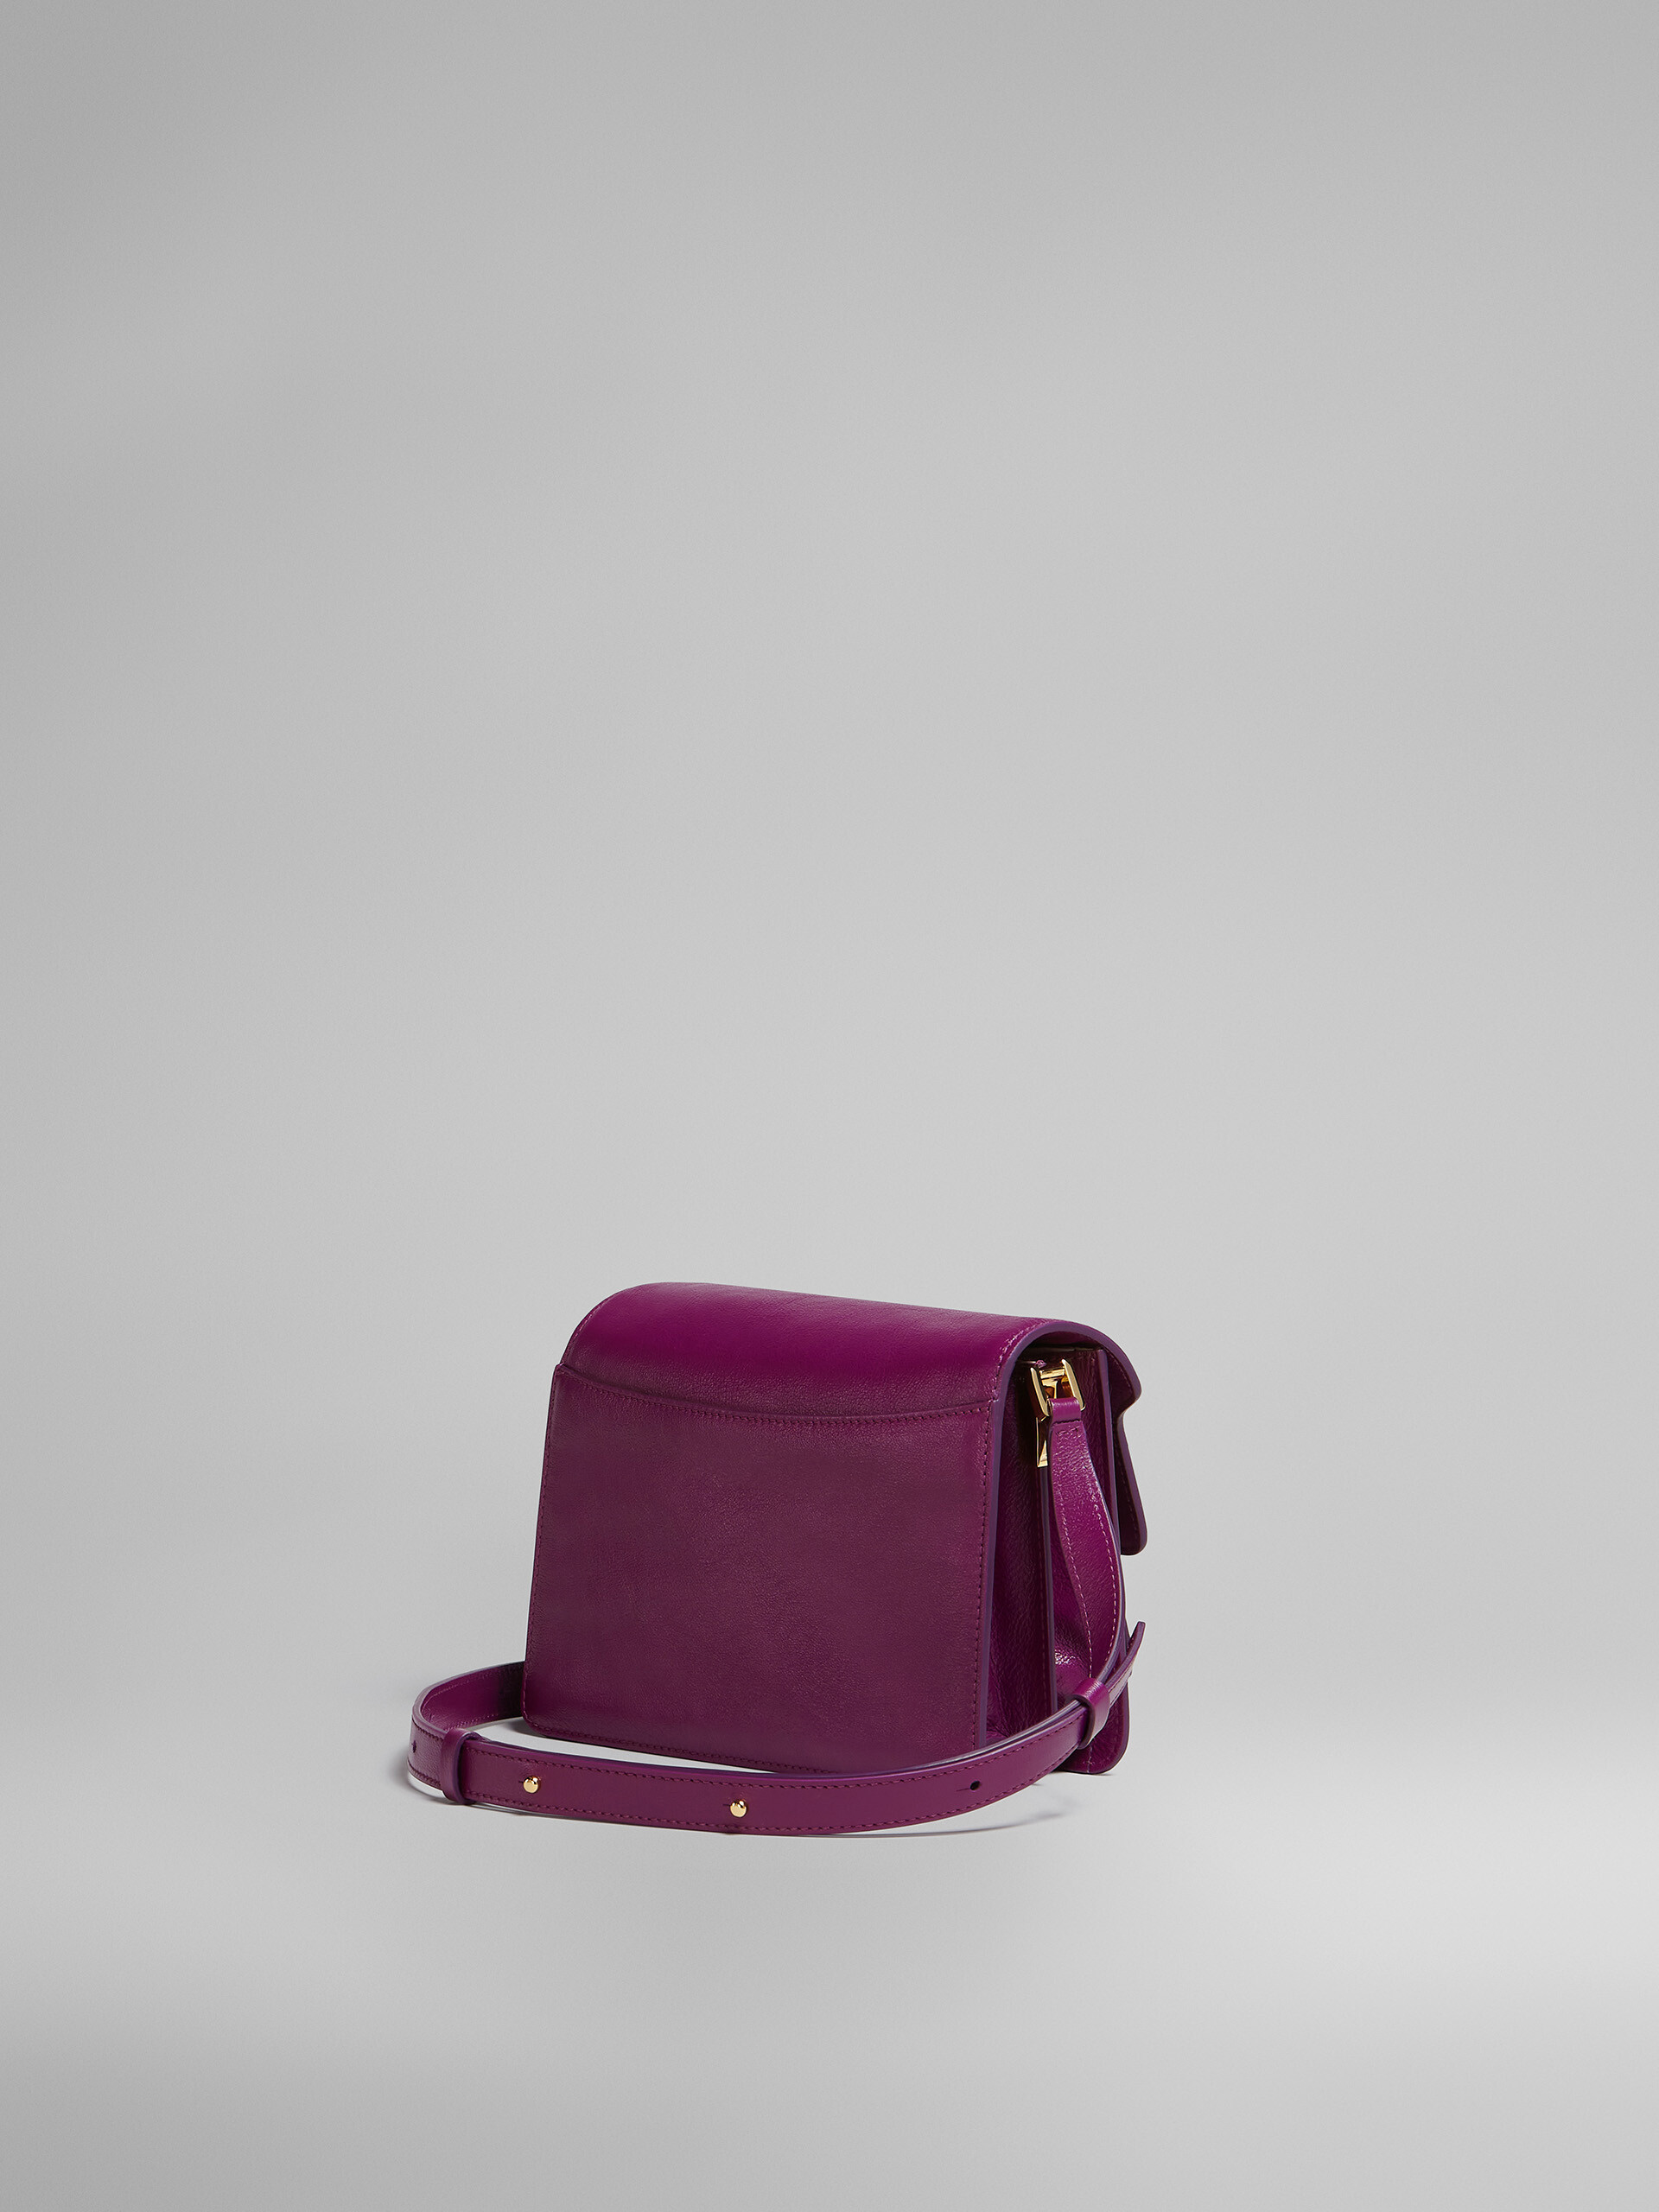 TRUNK SOFT medium bag in purple leather - Shoulder Bag - Image 2